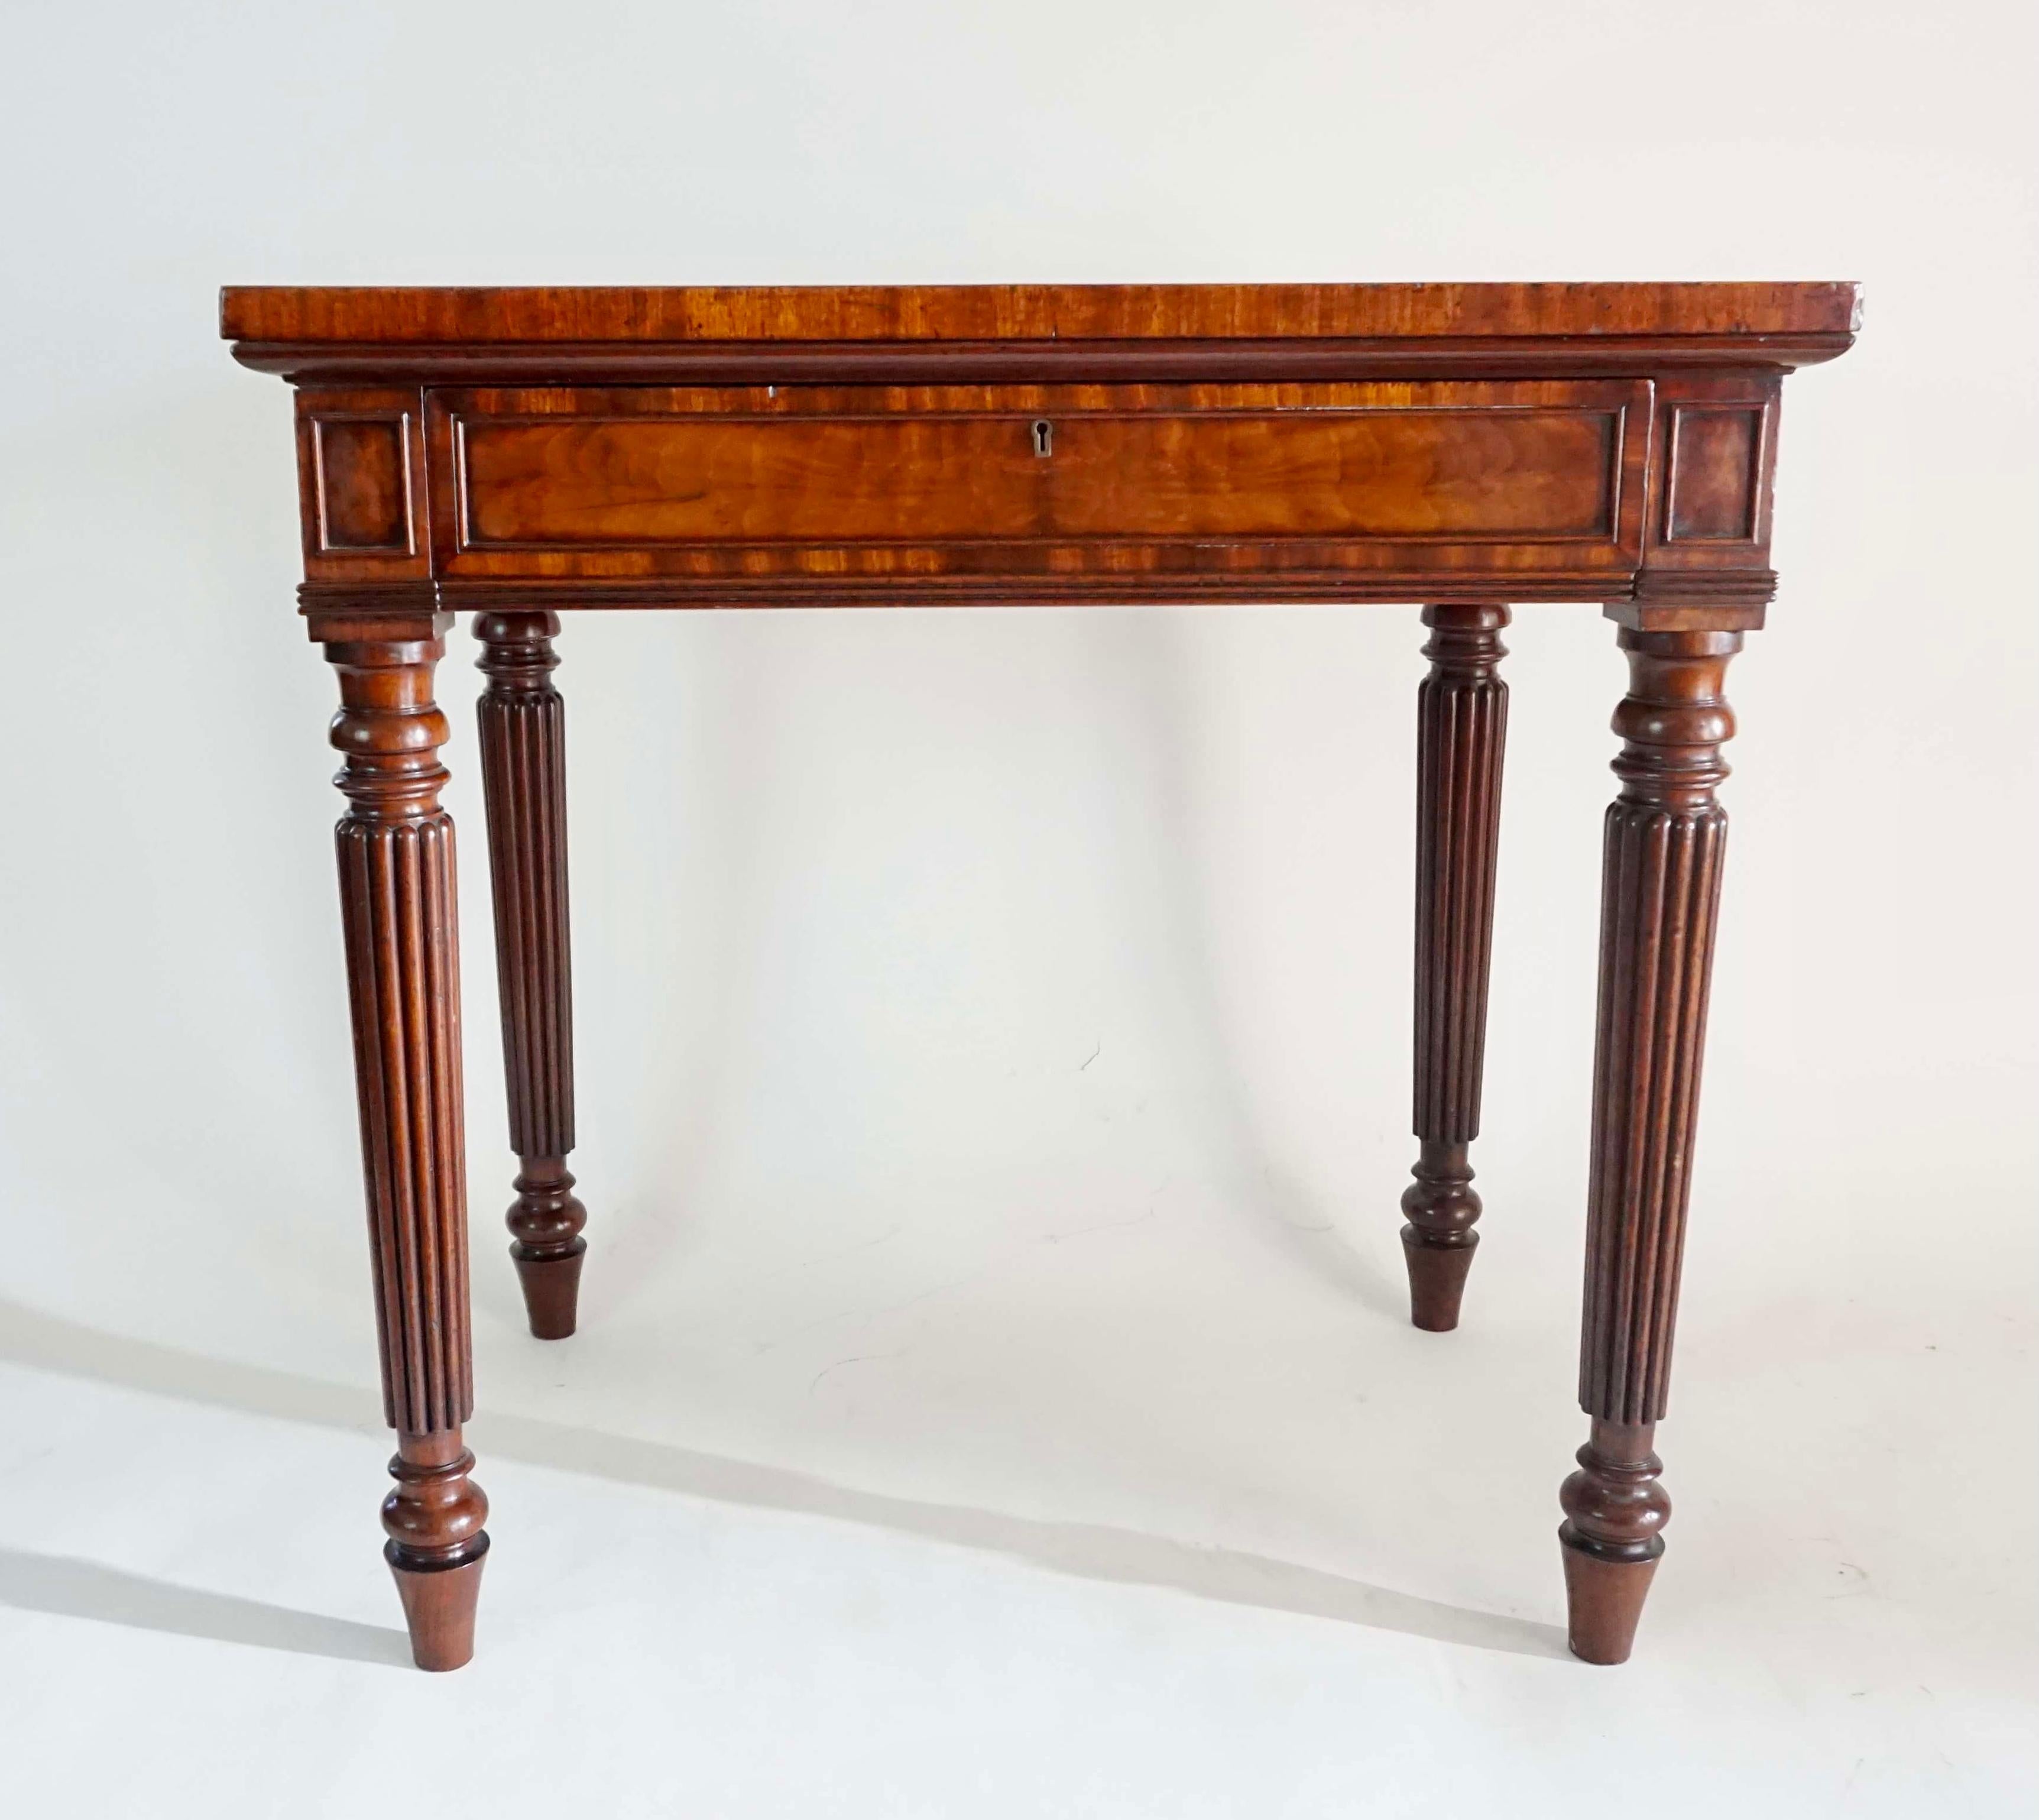 Une très belle table d'appoint ou d'écriture datant d'environ 1820, réalisée par la légendaire firme anglaise d'ébénistes Gillows de Lancaster et Londres, de forme rectangulaire, avec un plateau en acajou massif 